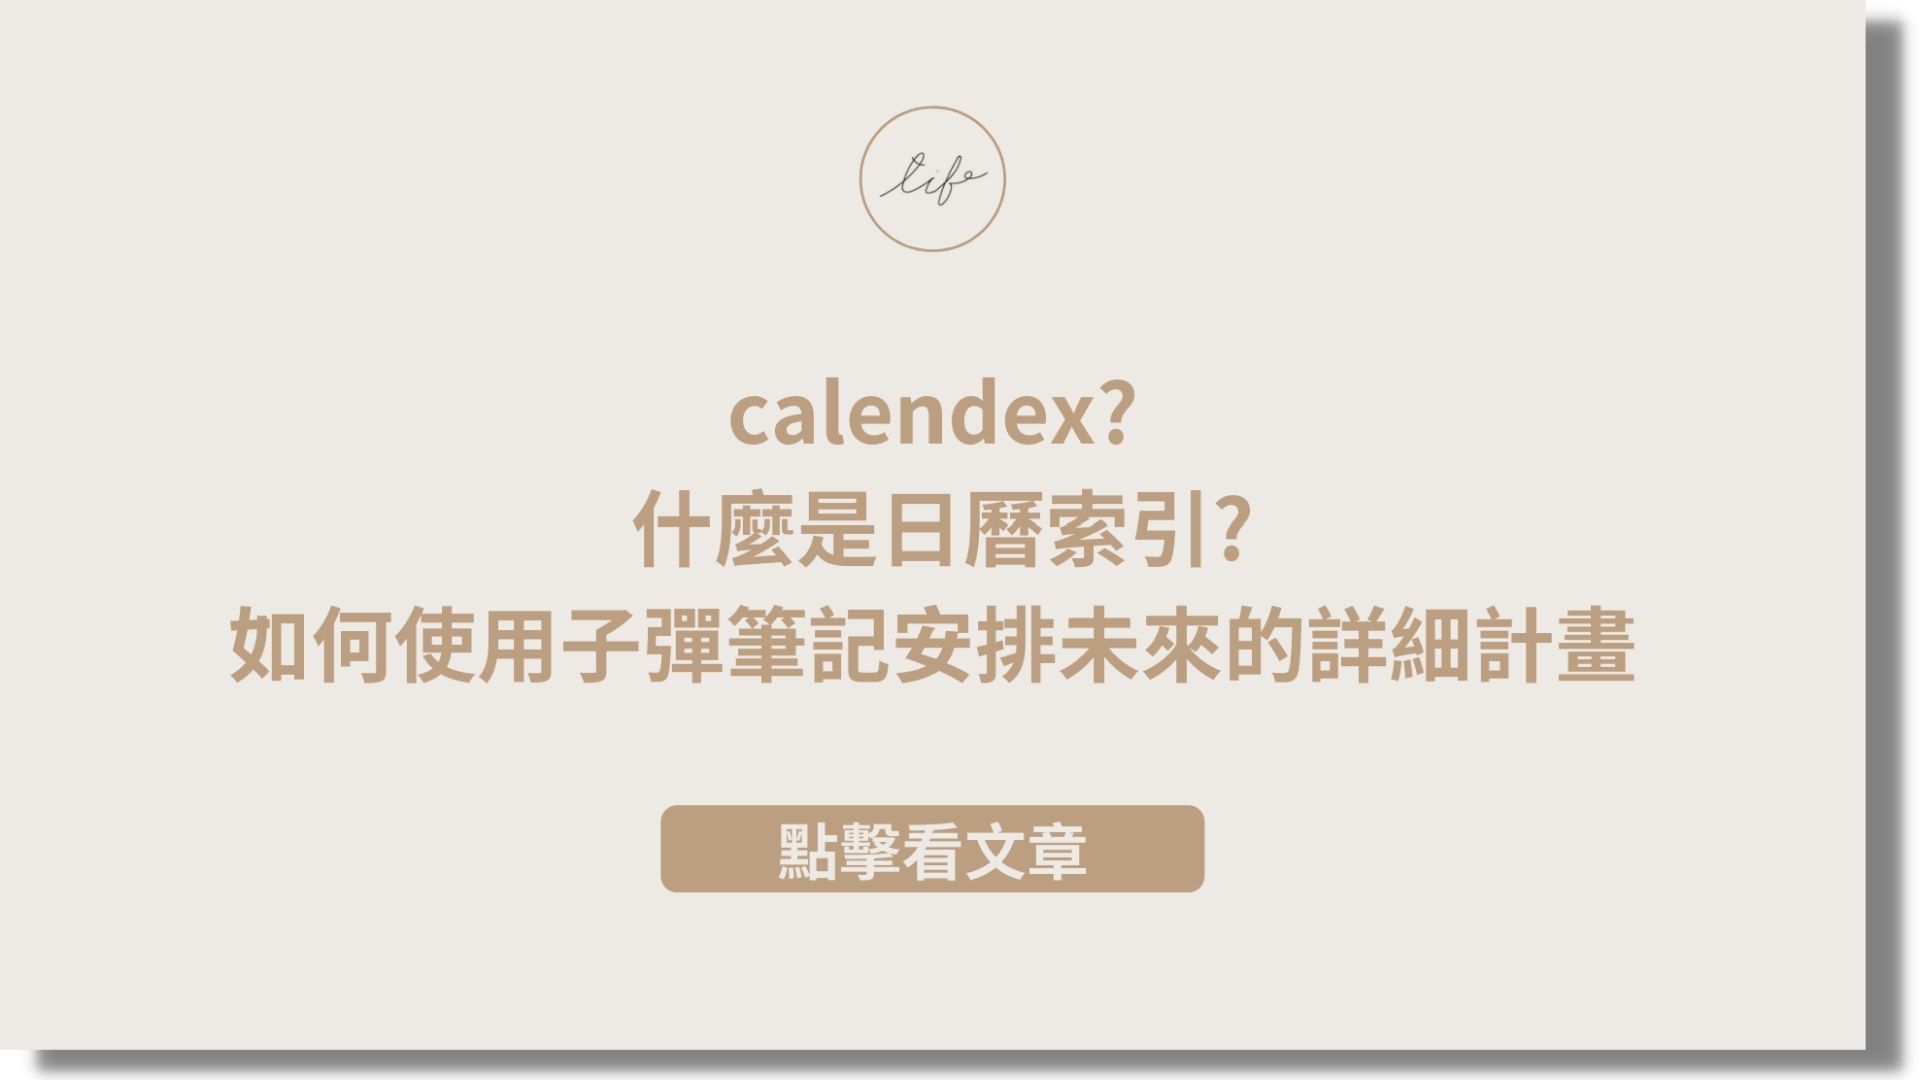 日曆索引calendex